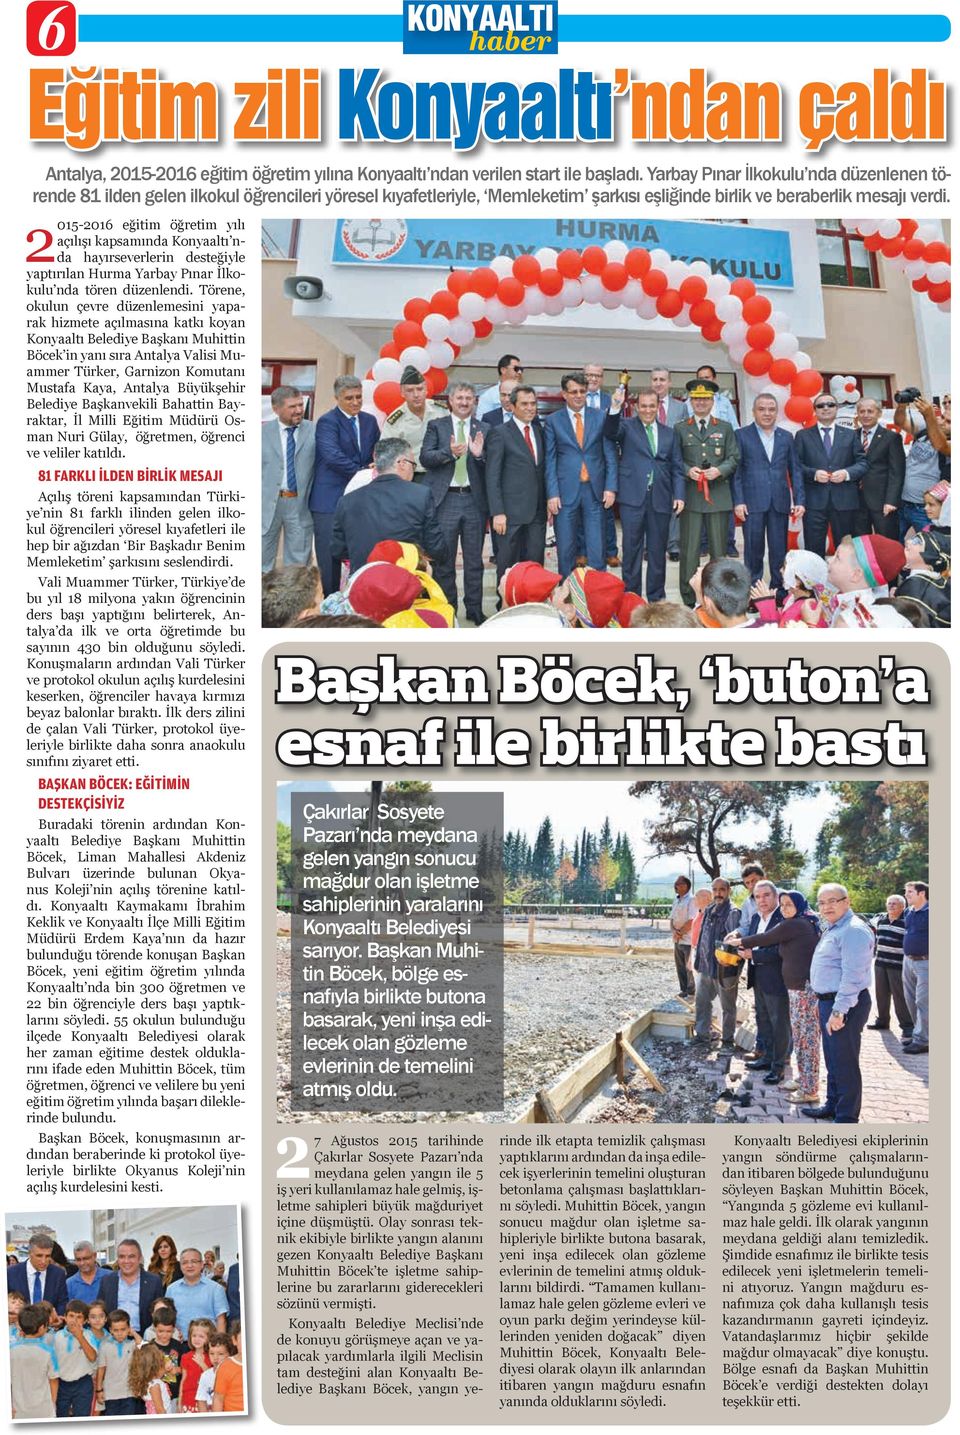 2015-2016 eğitim öğretim yılı açılışı kapsamında Konyaaltı nda hayırseverlerin desteğiyle yaptırılan Hurma Yarbay Pınar İlkokulu nda tören düzenlendi.